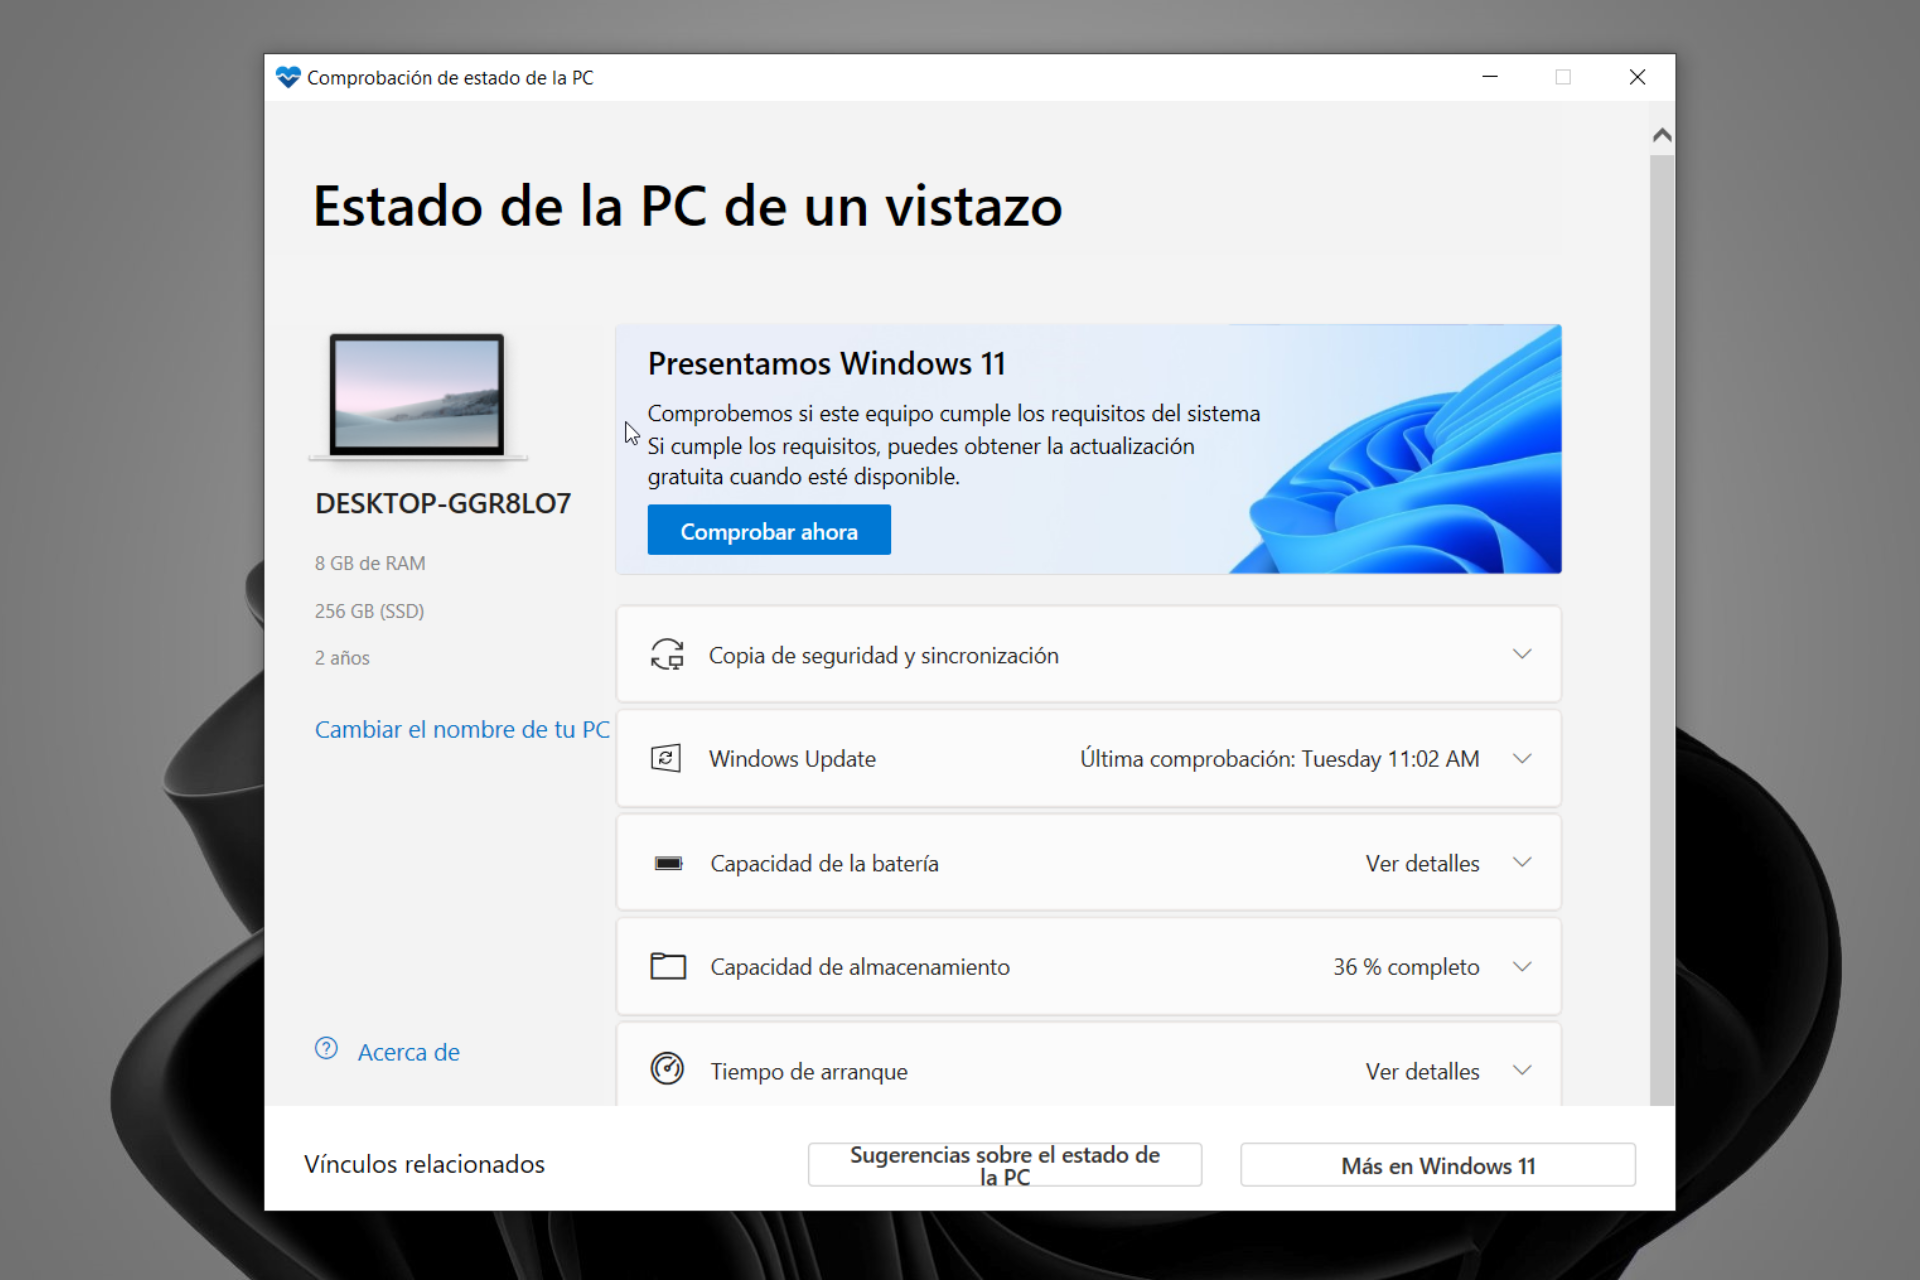 PC Health Check: Compatibilidad de su PC con Windows 11